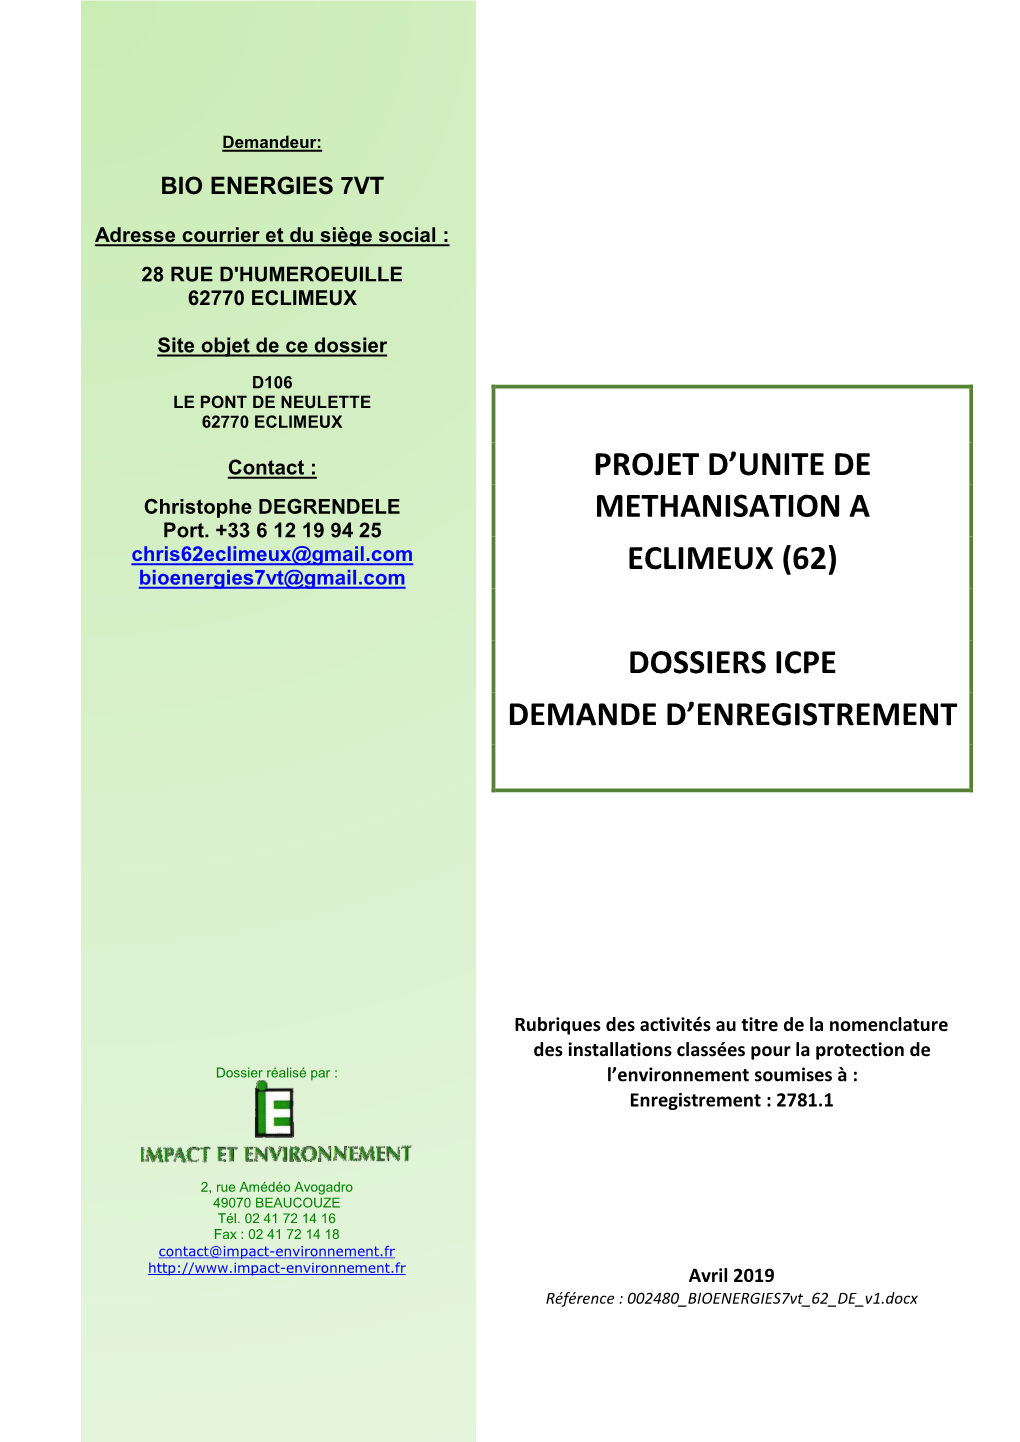 Projet D'unite De Methanisation a Eclimeux (62